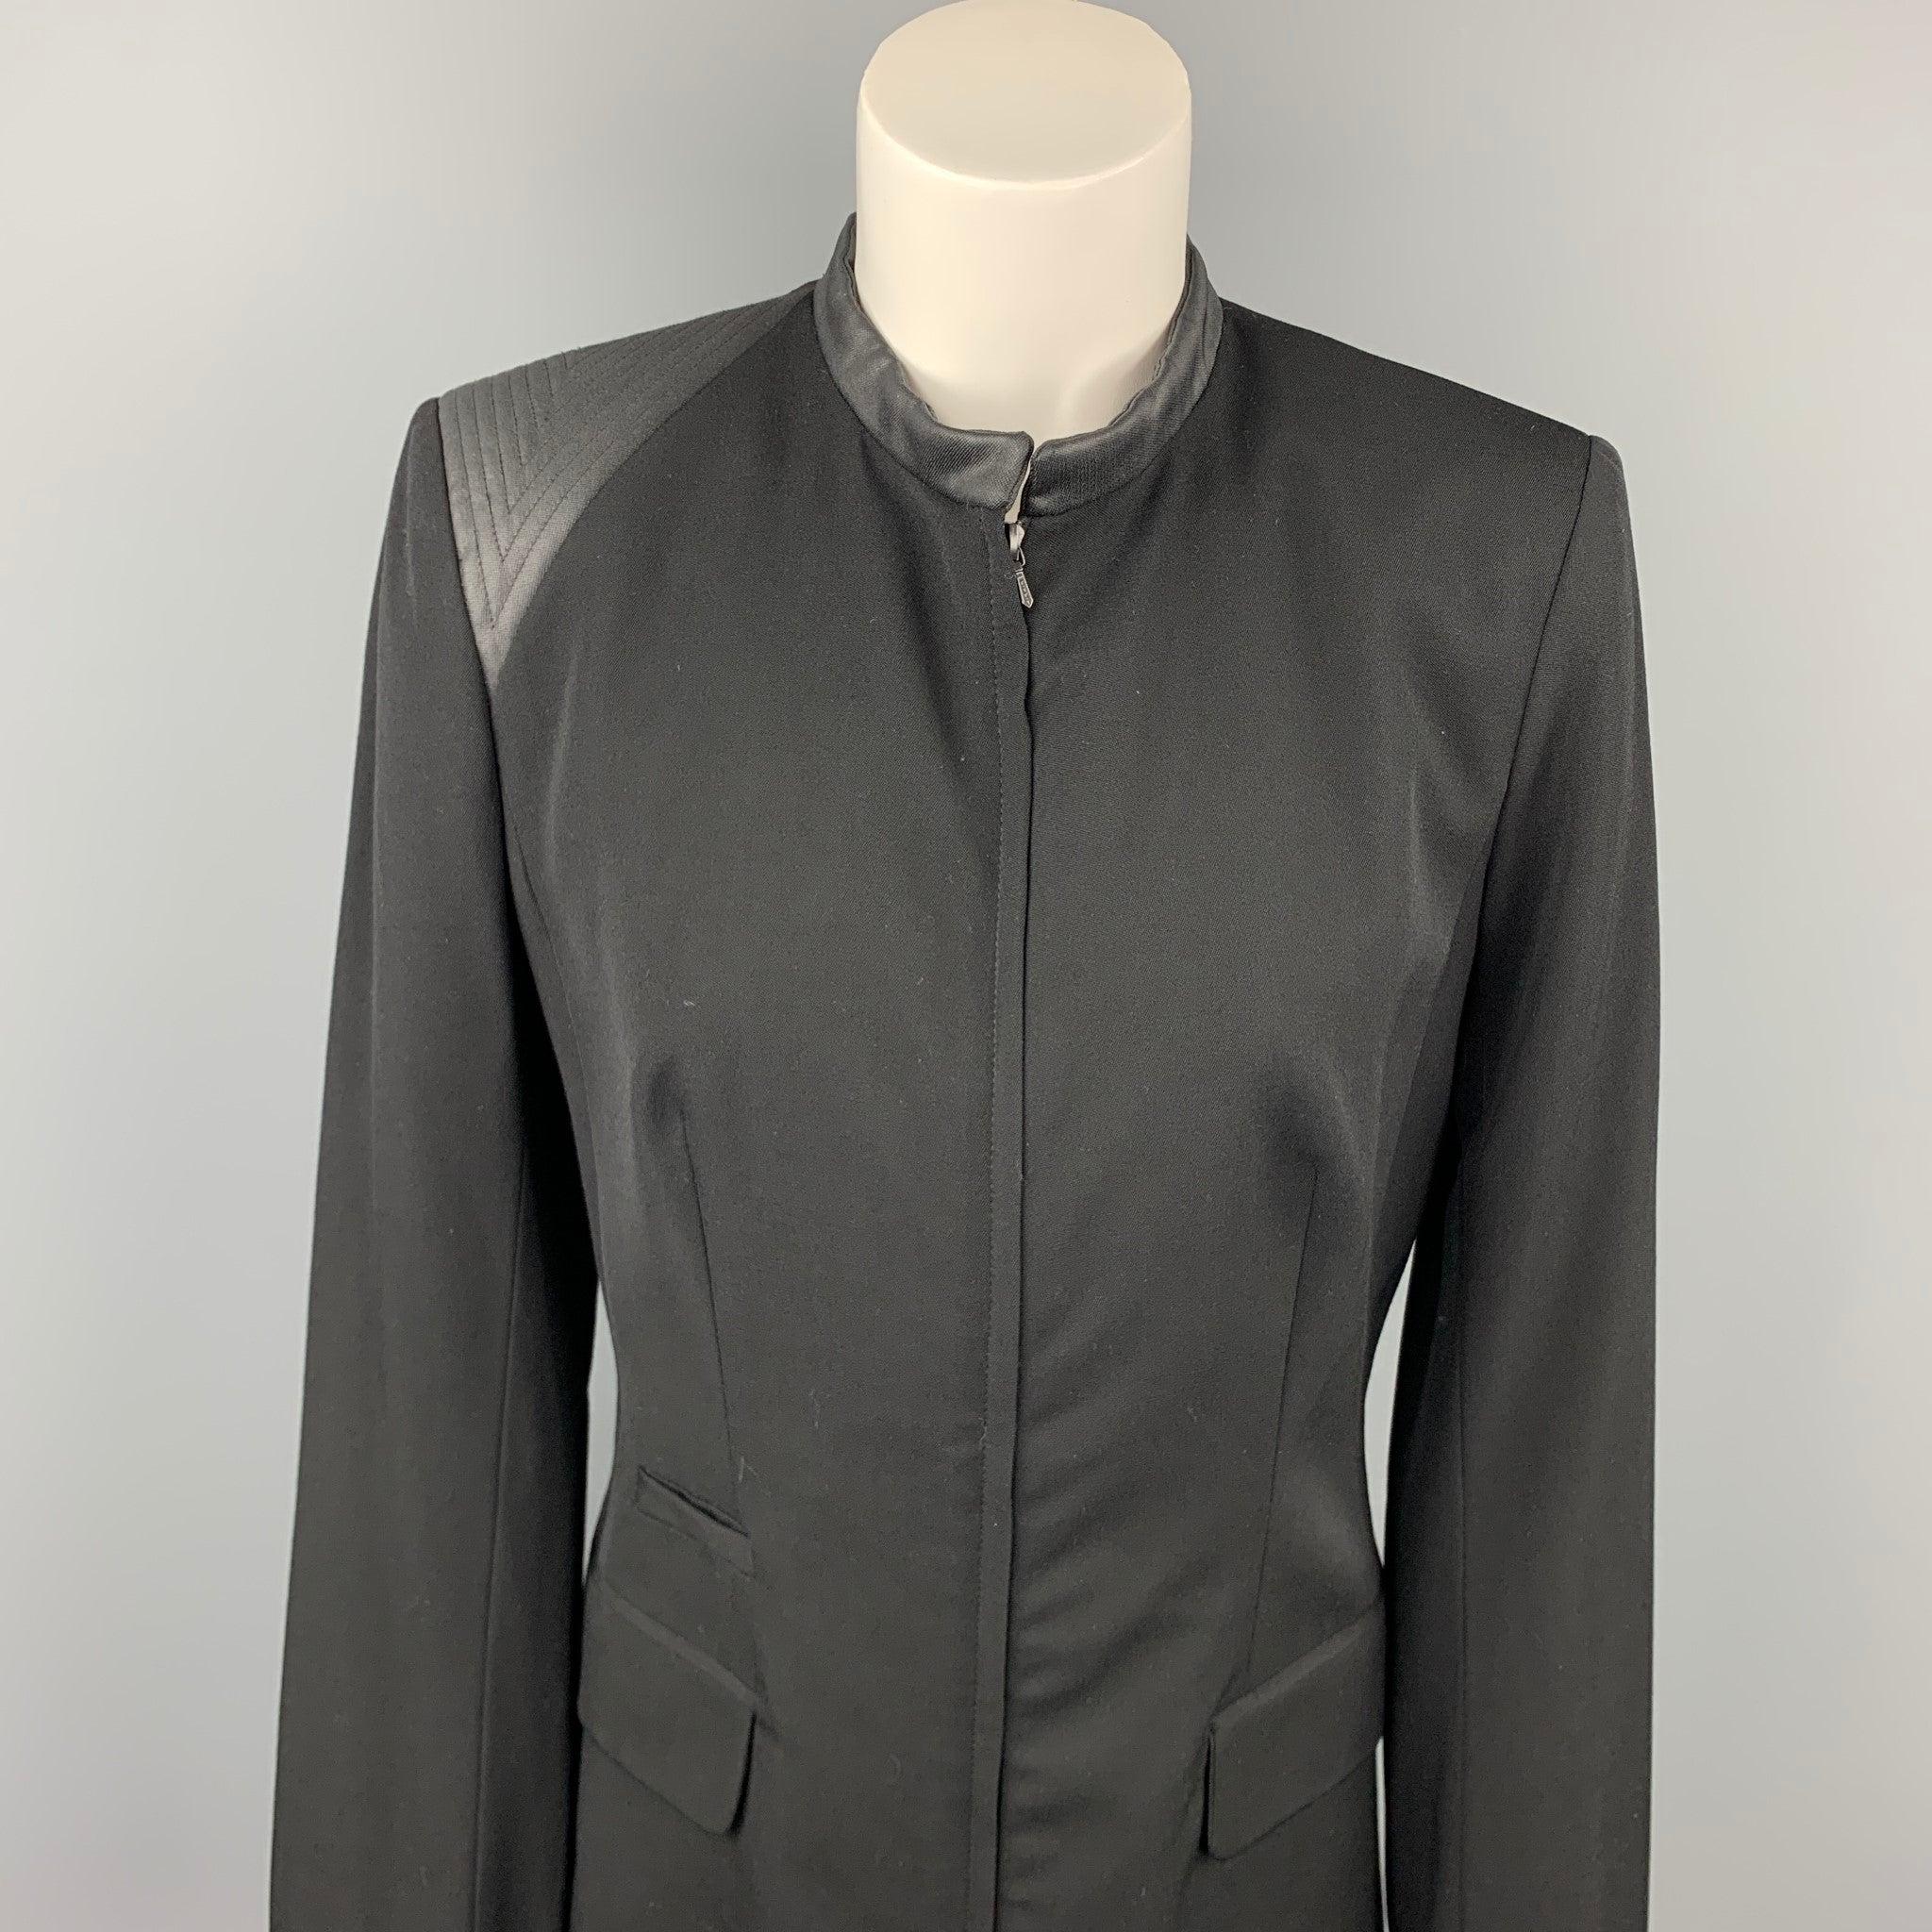 La veste CLAUDE MONTANA, en laine et soie bicolores noires, présente un ourlet côtelé, des épaulettes, des poches à rabat et une fermeture à glissière. Fabriqué en Italie.
Etat d'occasion. 

Marqué :   IT 40 

Mesures : 
 
Épaule : 15.5 pouces